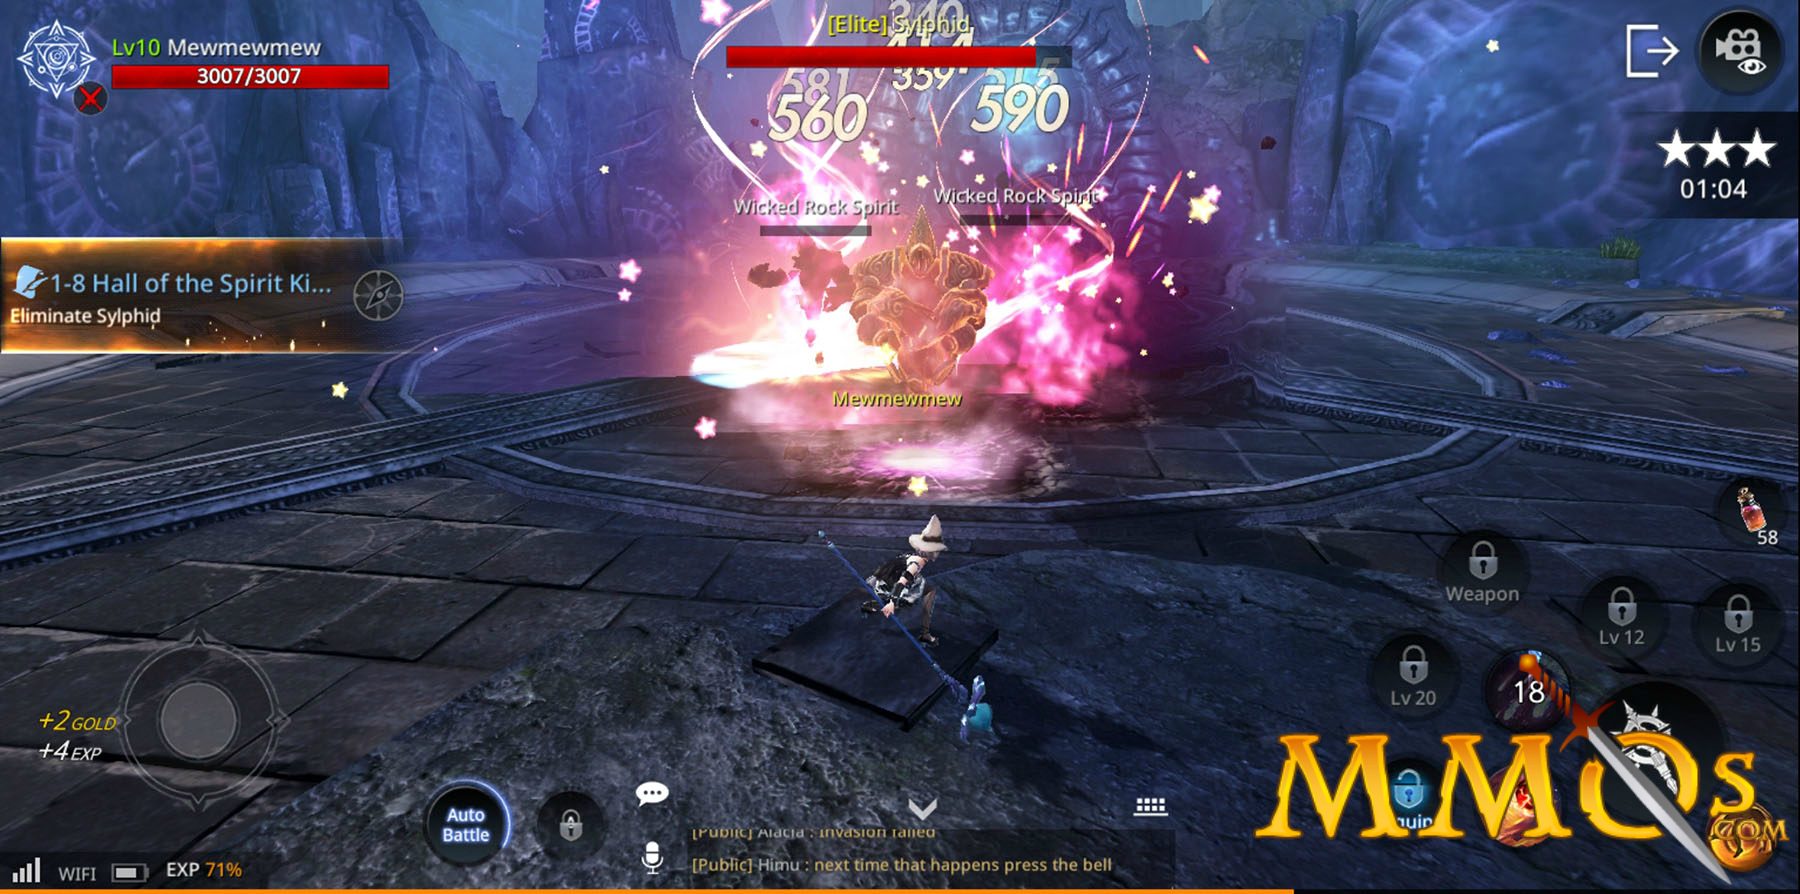 AxE: Alliance vs Empire - Next-generation mobile MMORPG begins